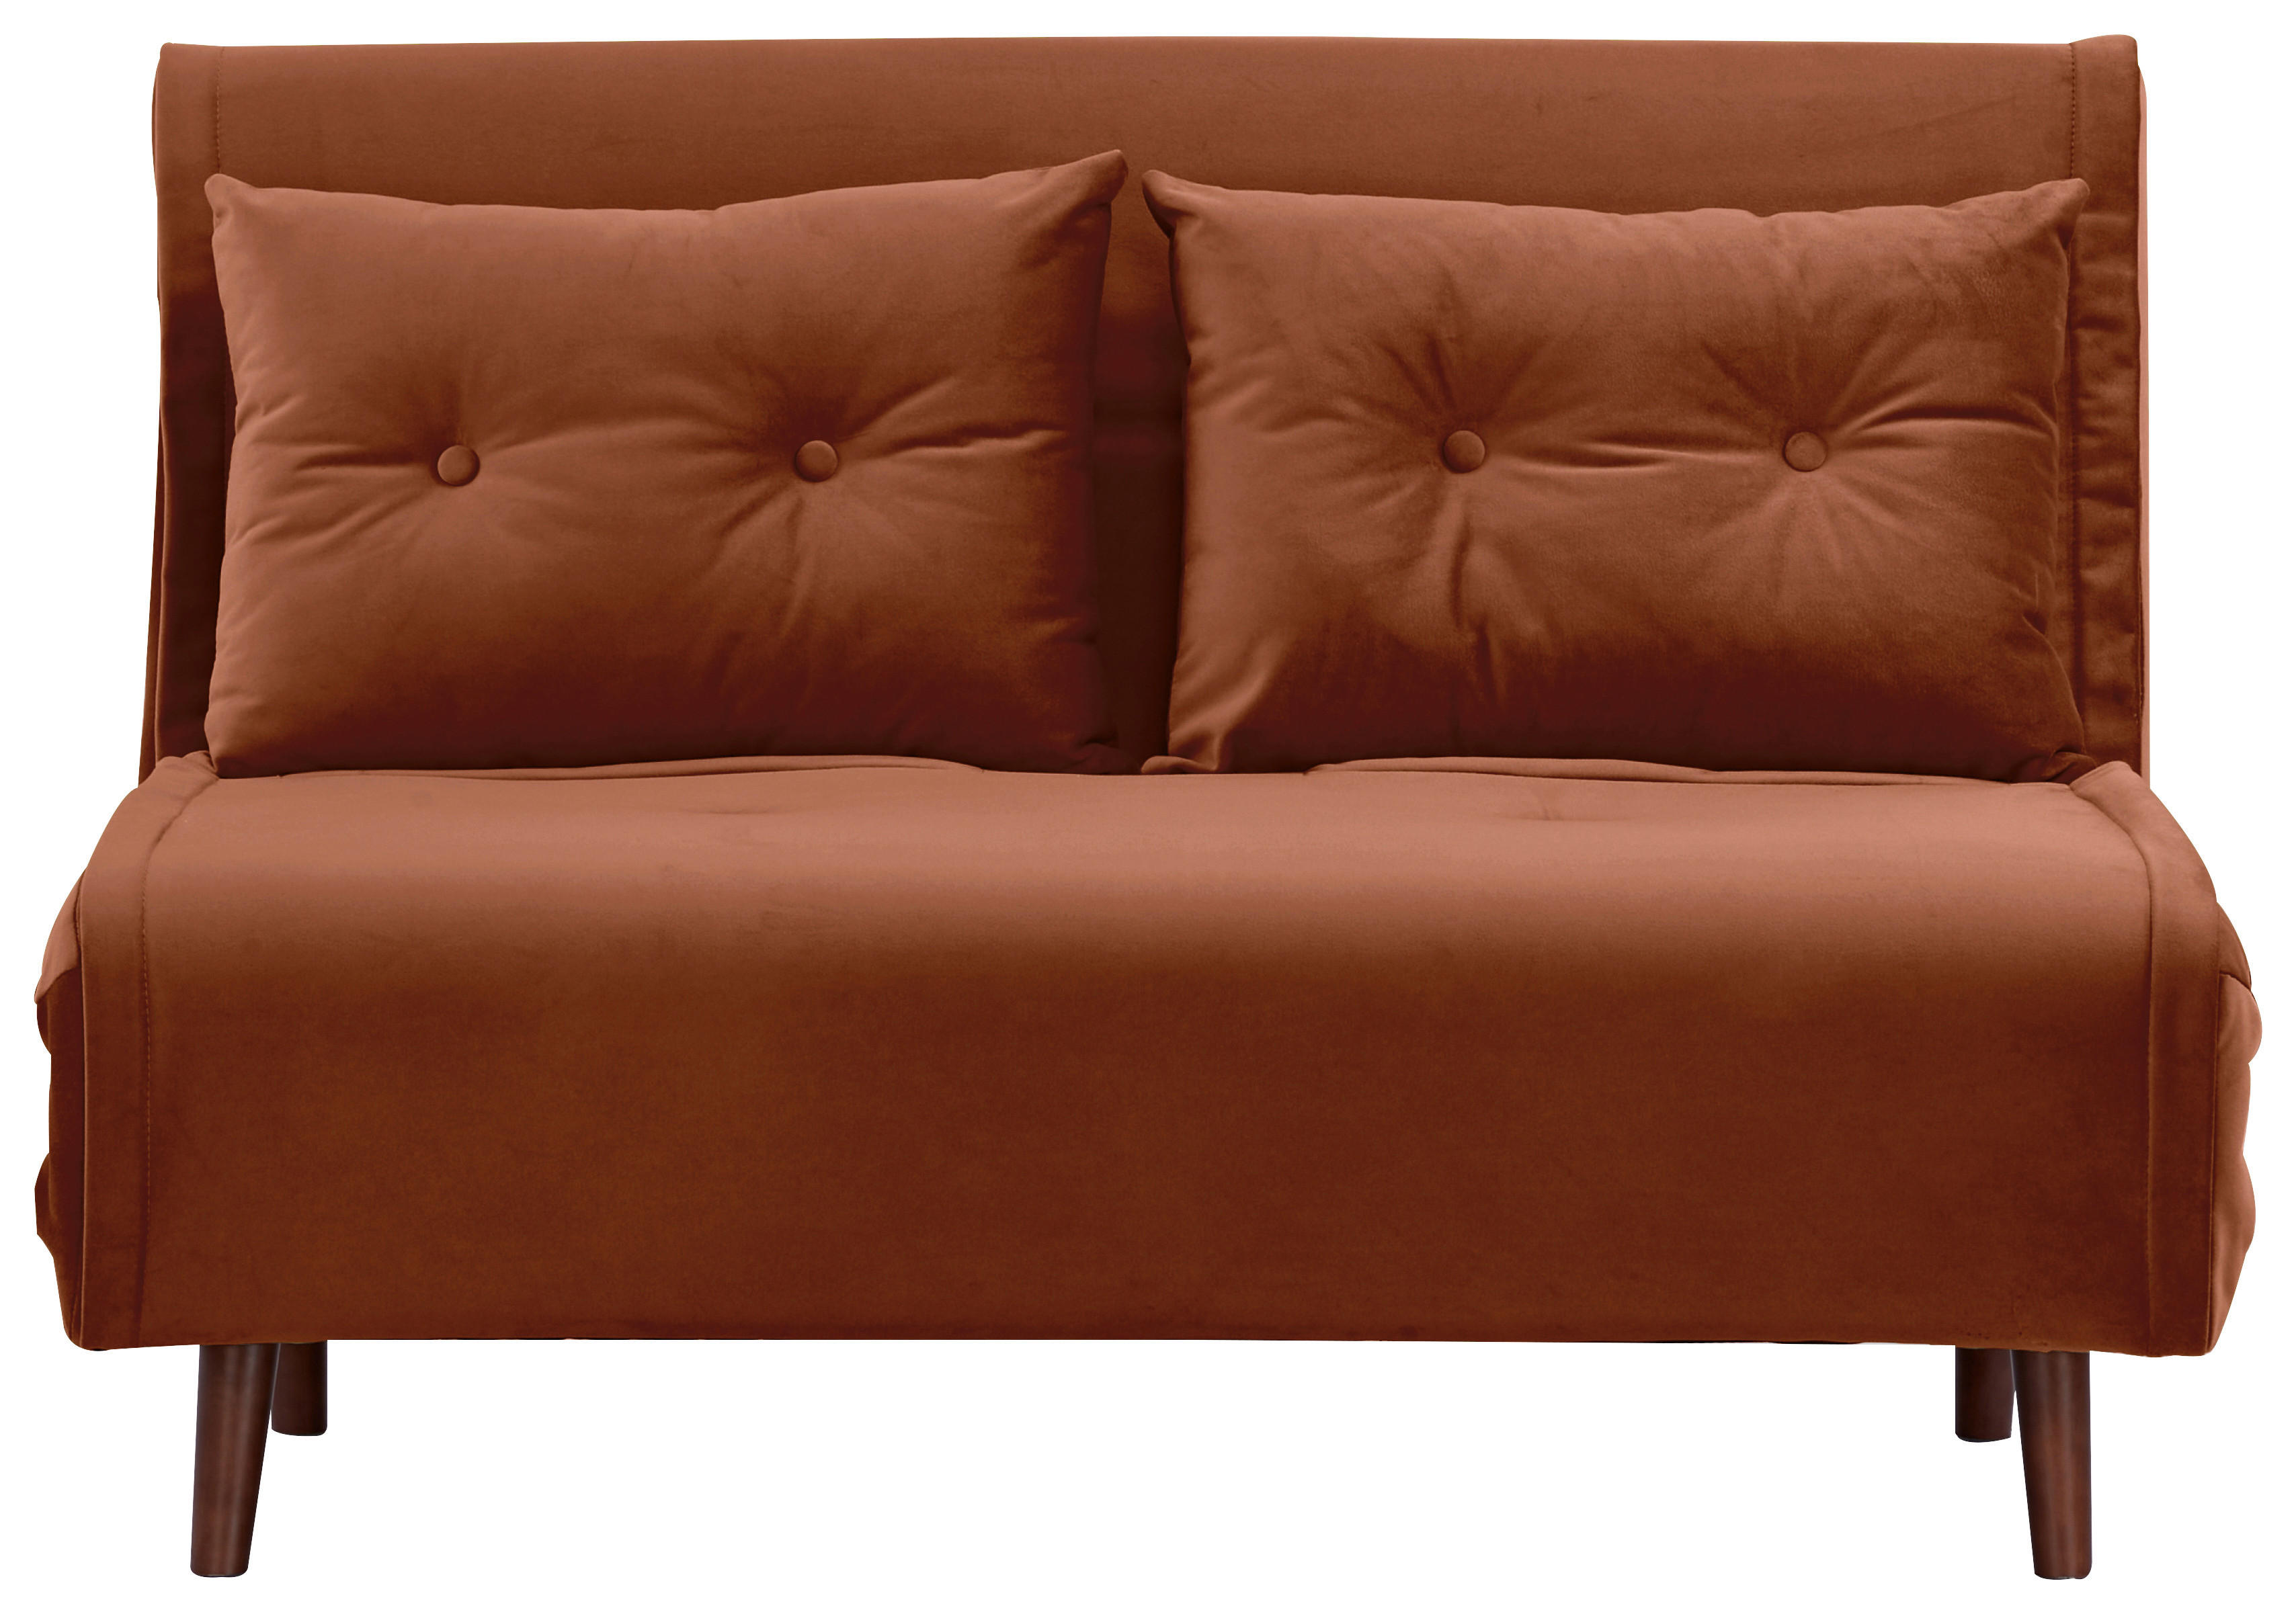 SCHLAFSOFA in Textil Orange  - Birkefarben/Orange, Design, Holz/Textil (122/81/88cm) - Livetastic